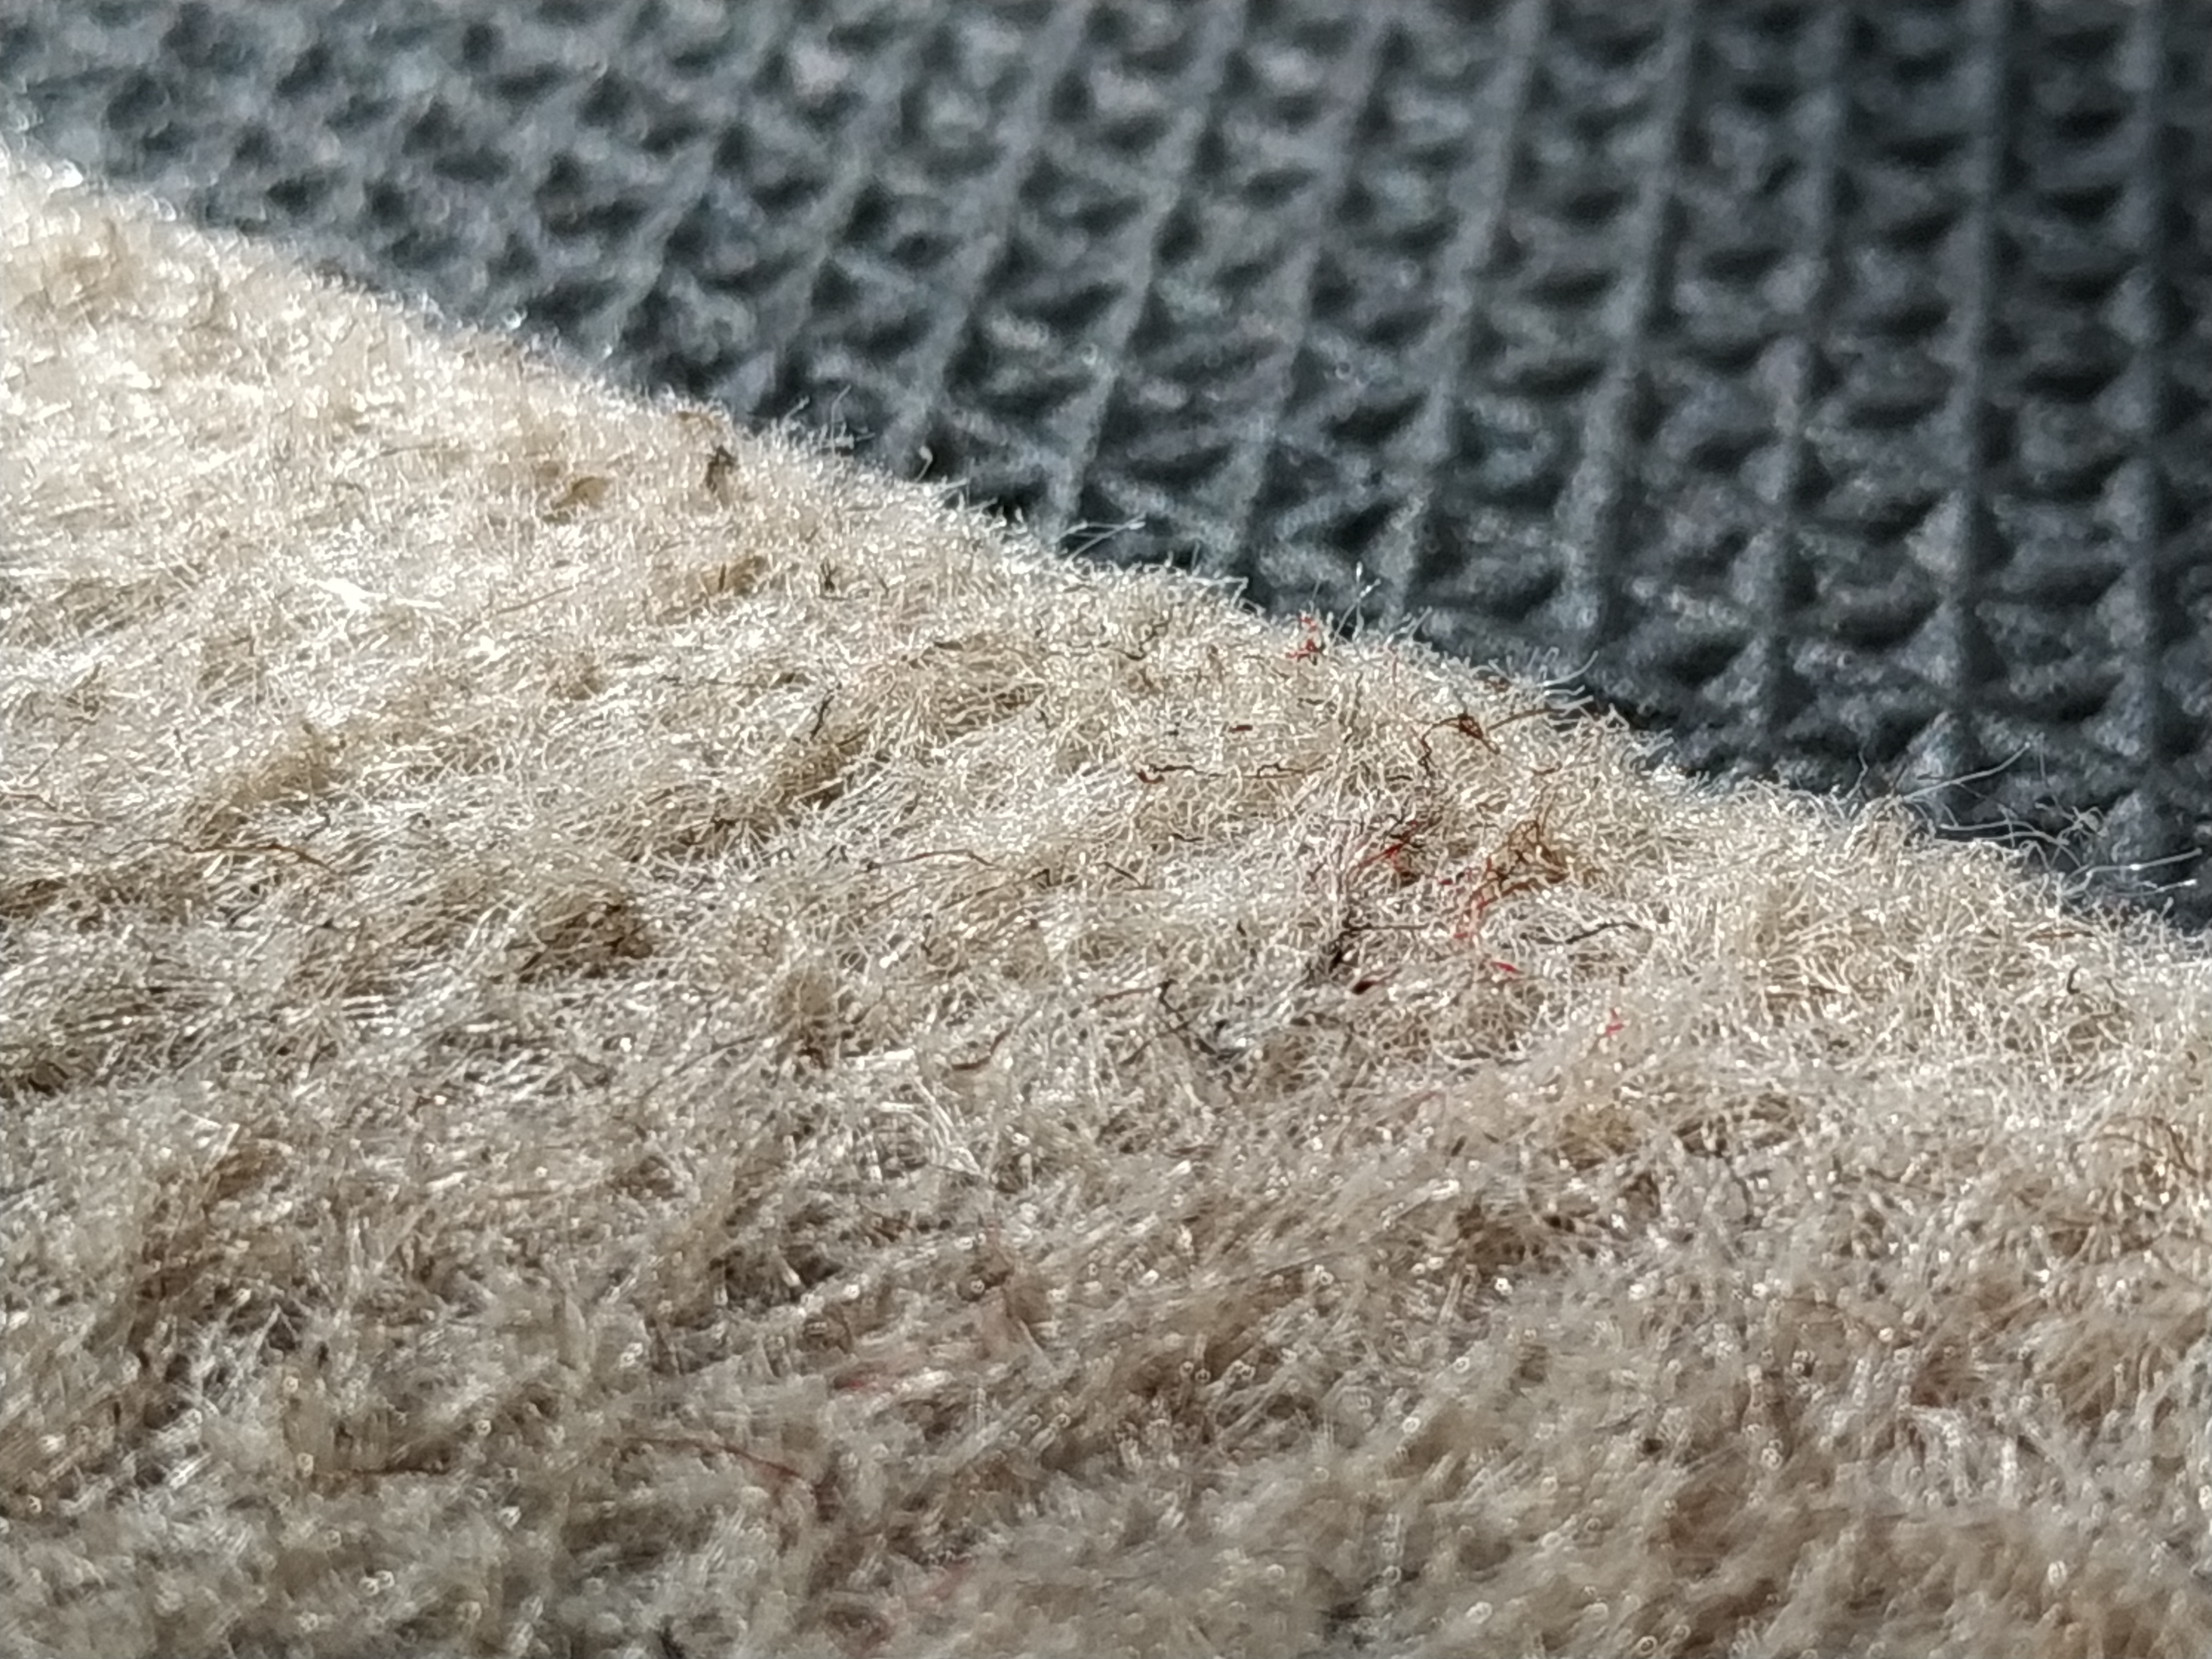 Pince antidérapante pour tapis – 0,9 x 1,5 m 0,6 cm feutre extra épais sous tapis pour tapis et sols en bois dur, rembourrage de tapis super rembourré.